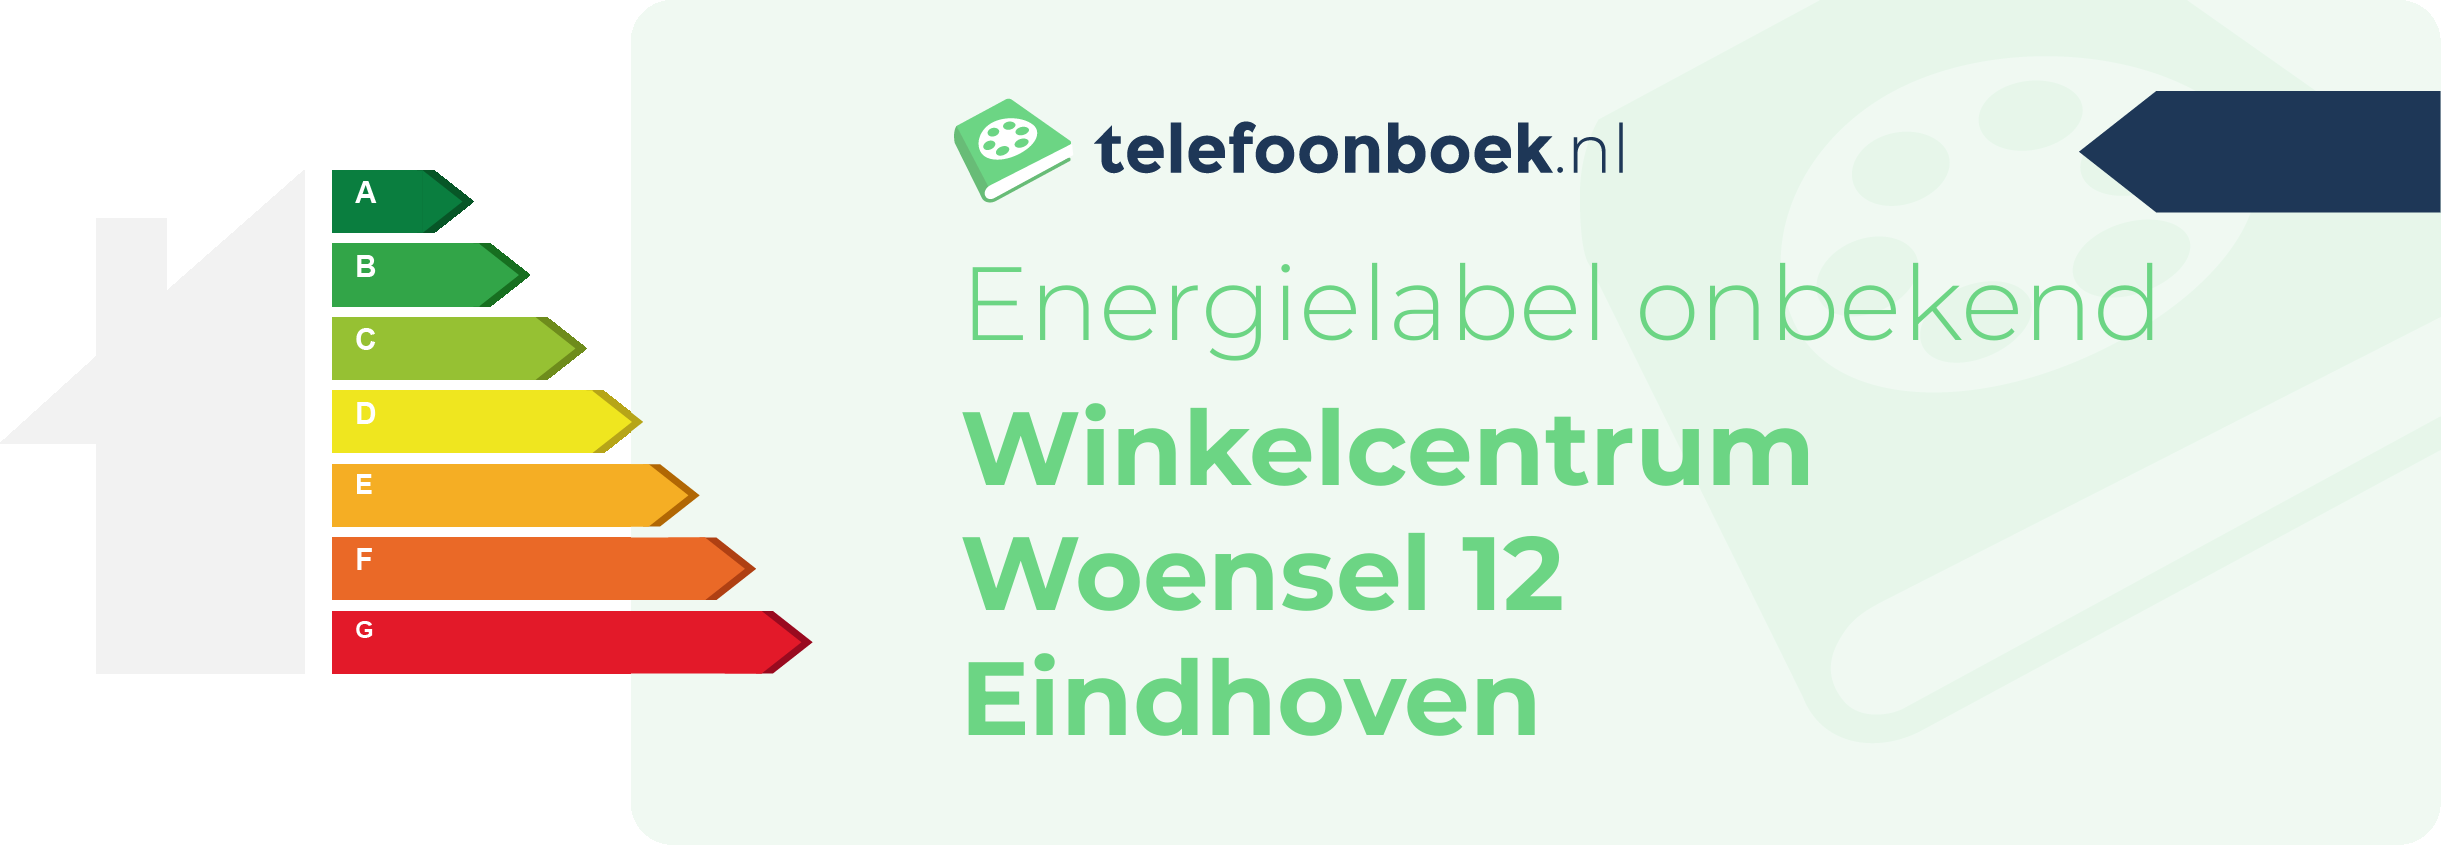 Energielabel Winkelcentrum Woensel 12 Eindhoven